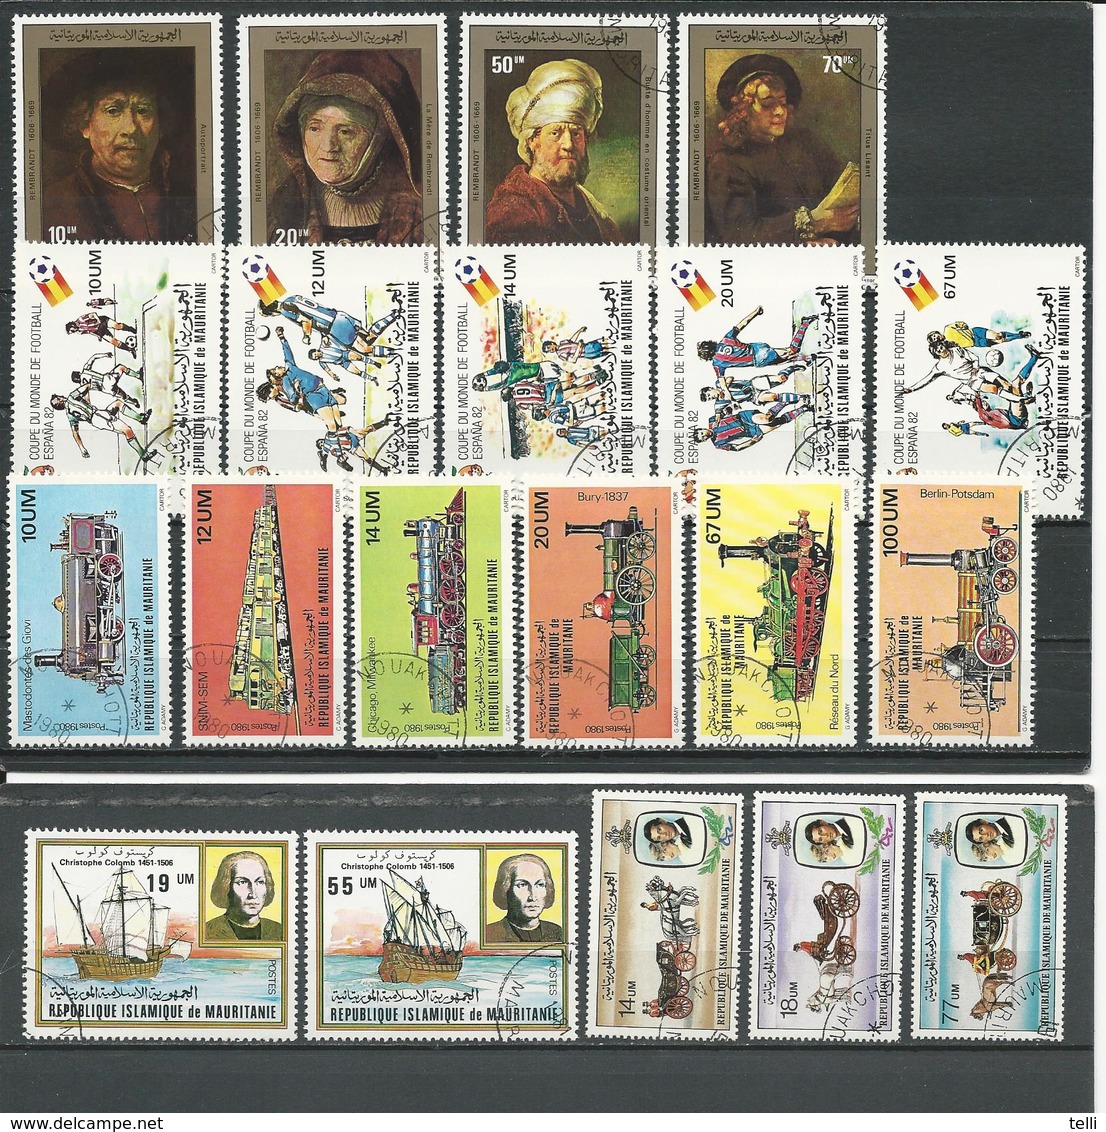 MAURITANIE 5 Séries Complètes Voir Détail (20) O Cote 9,50$ 1980-81 - Mauritania (1960-...)